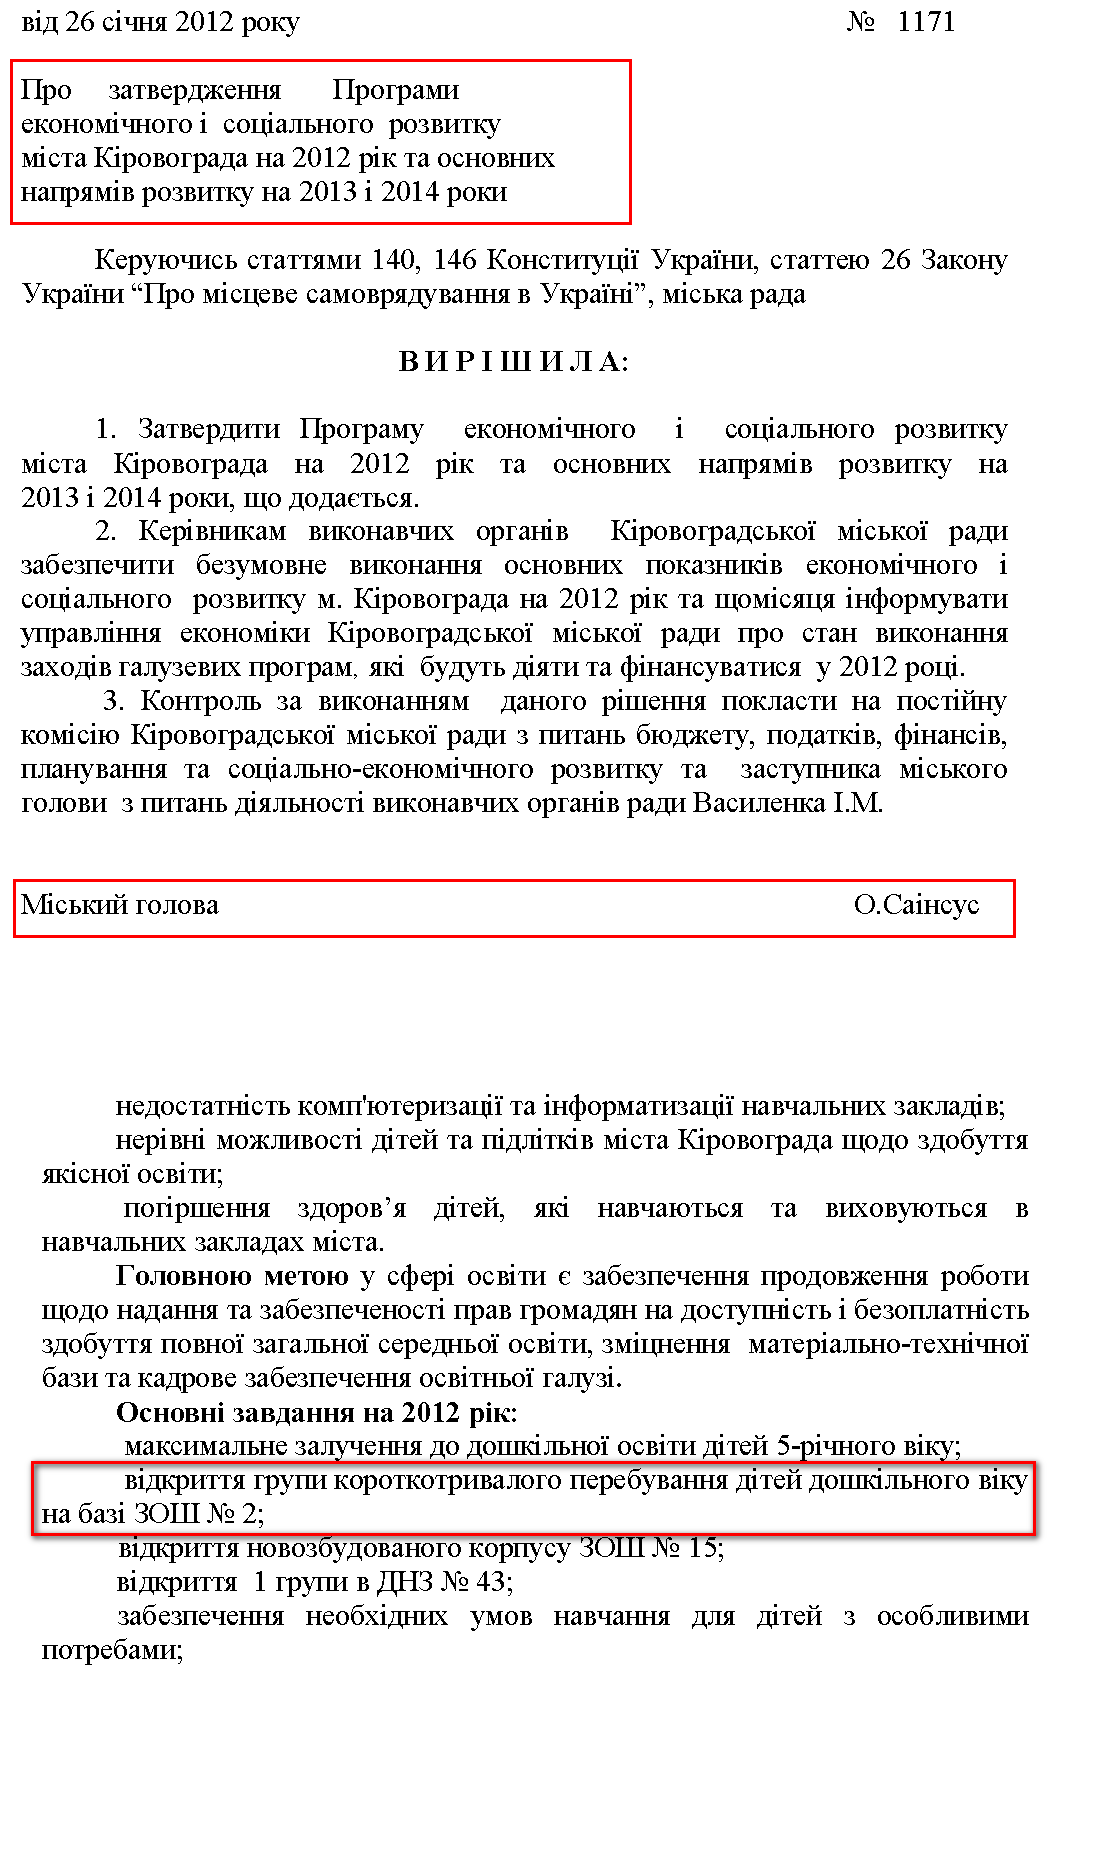 http://kr-rada.gov.ua/files/decision/ua-rishennya-dodatok-do-1171-3.pdf